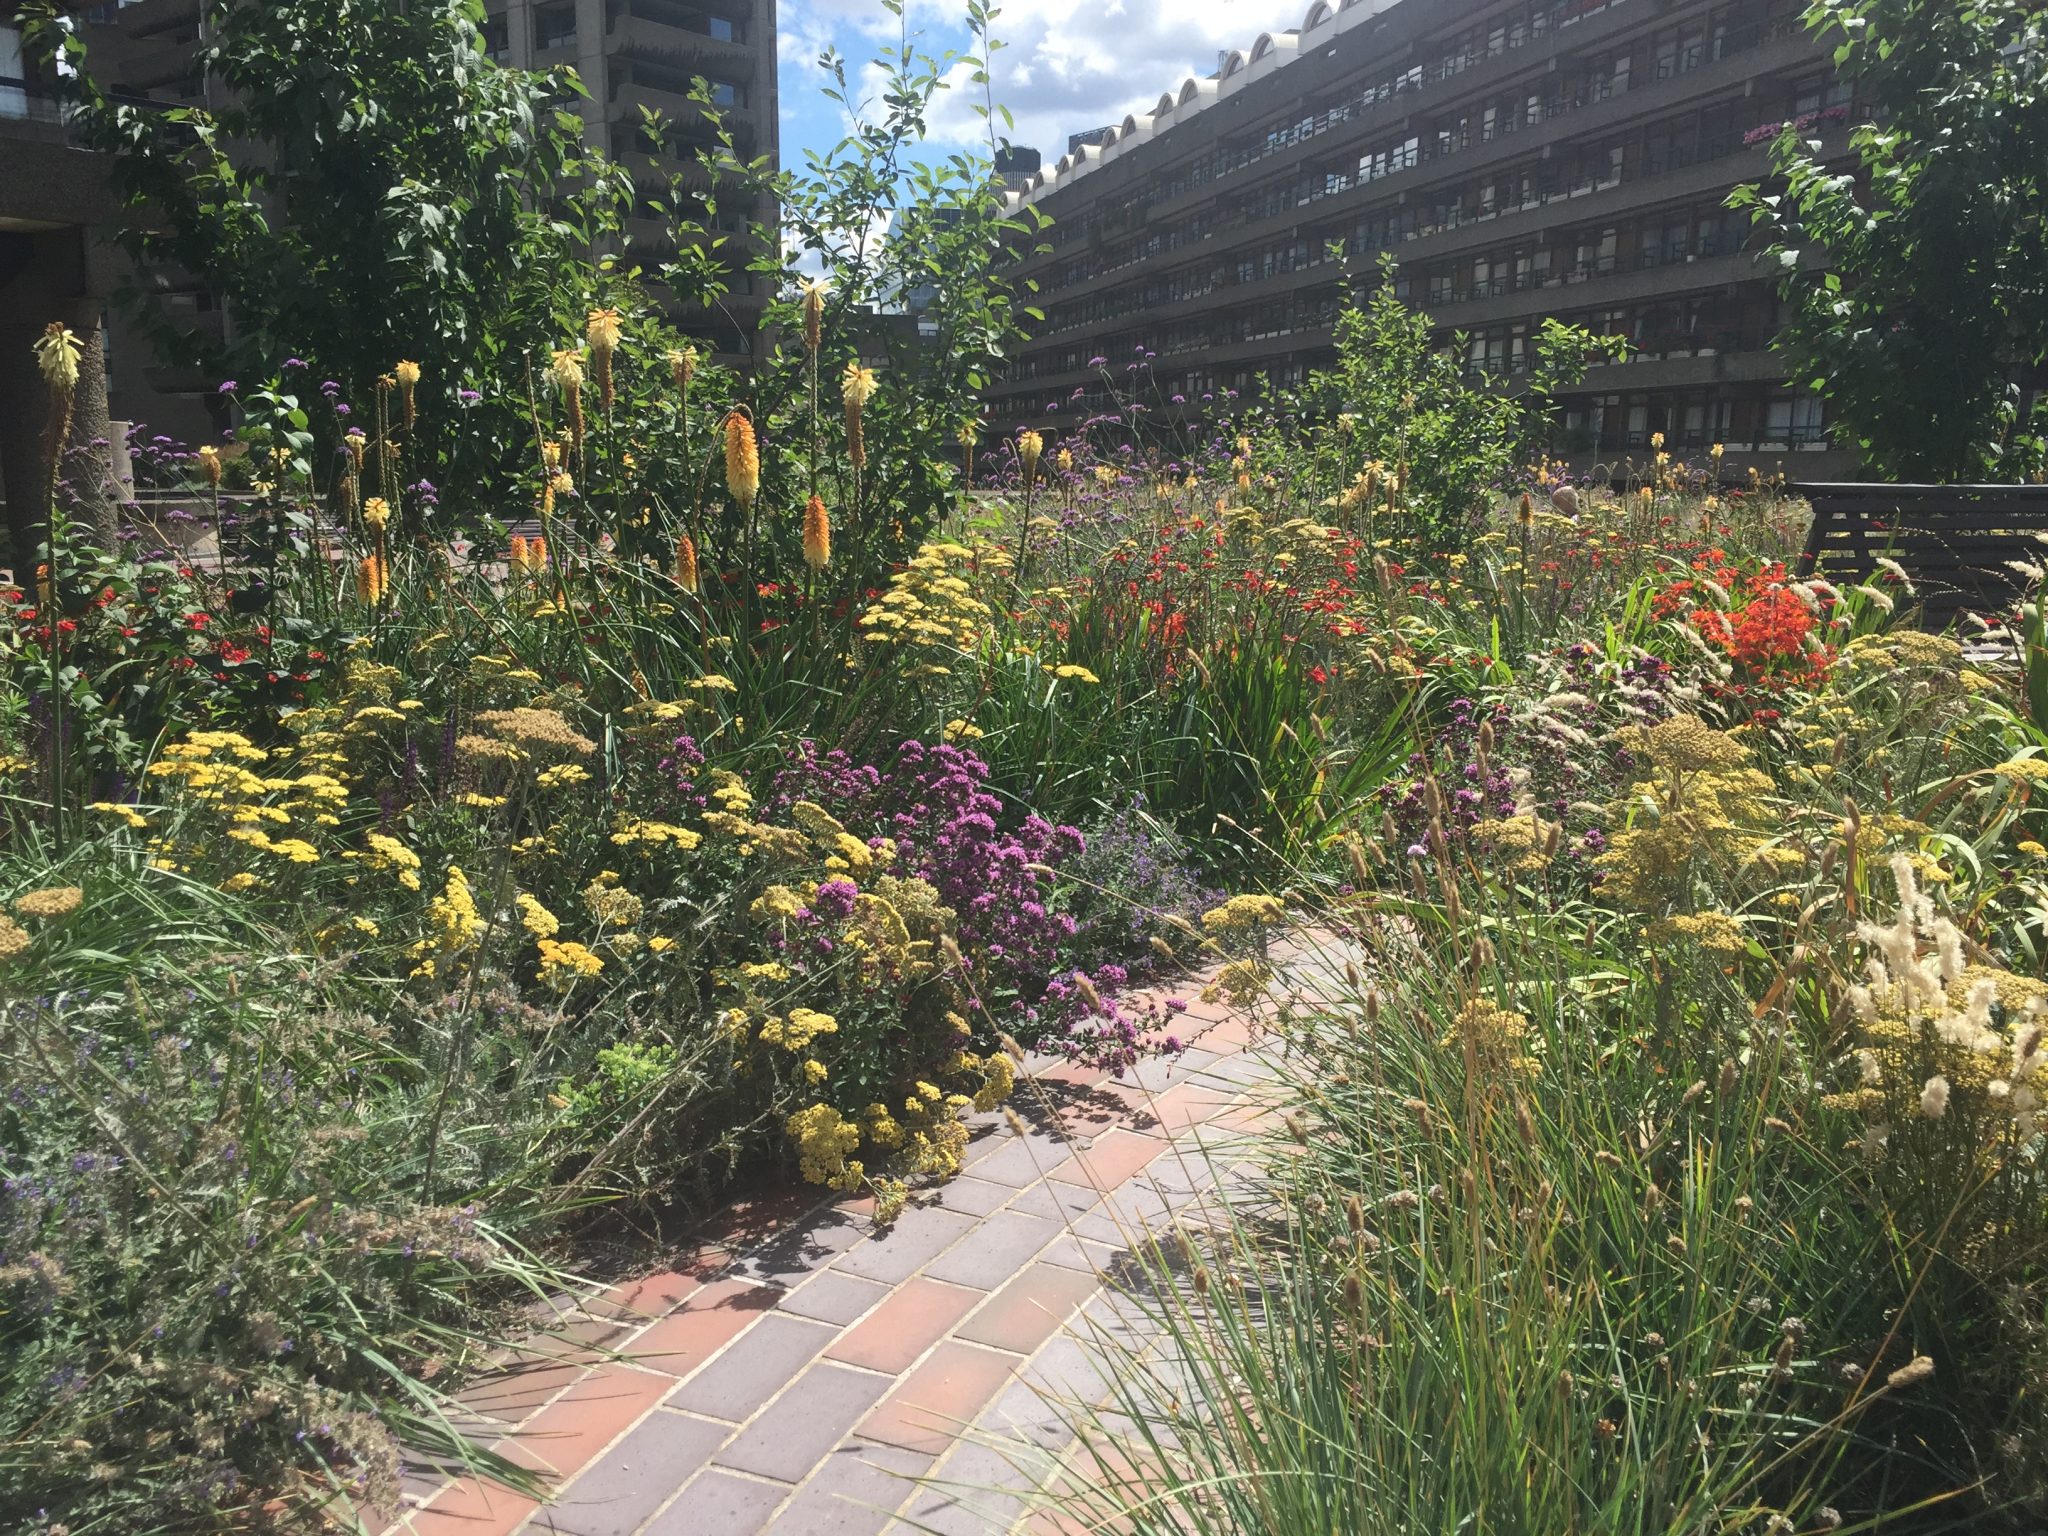 london gardens to visit free